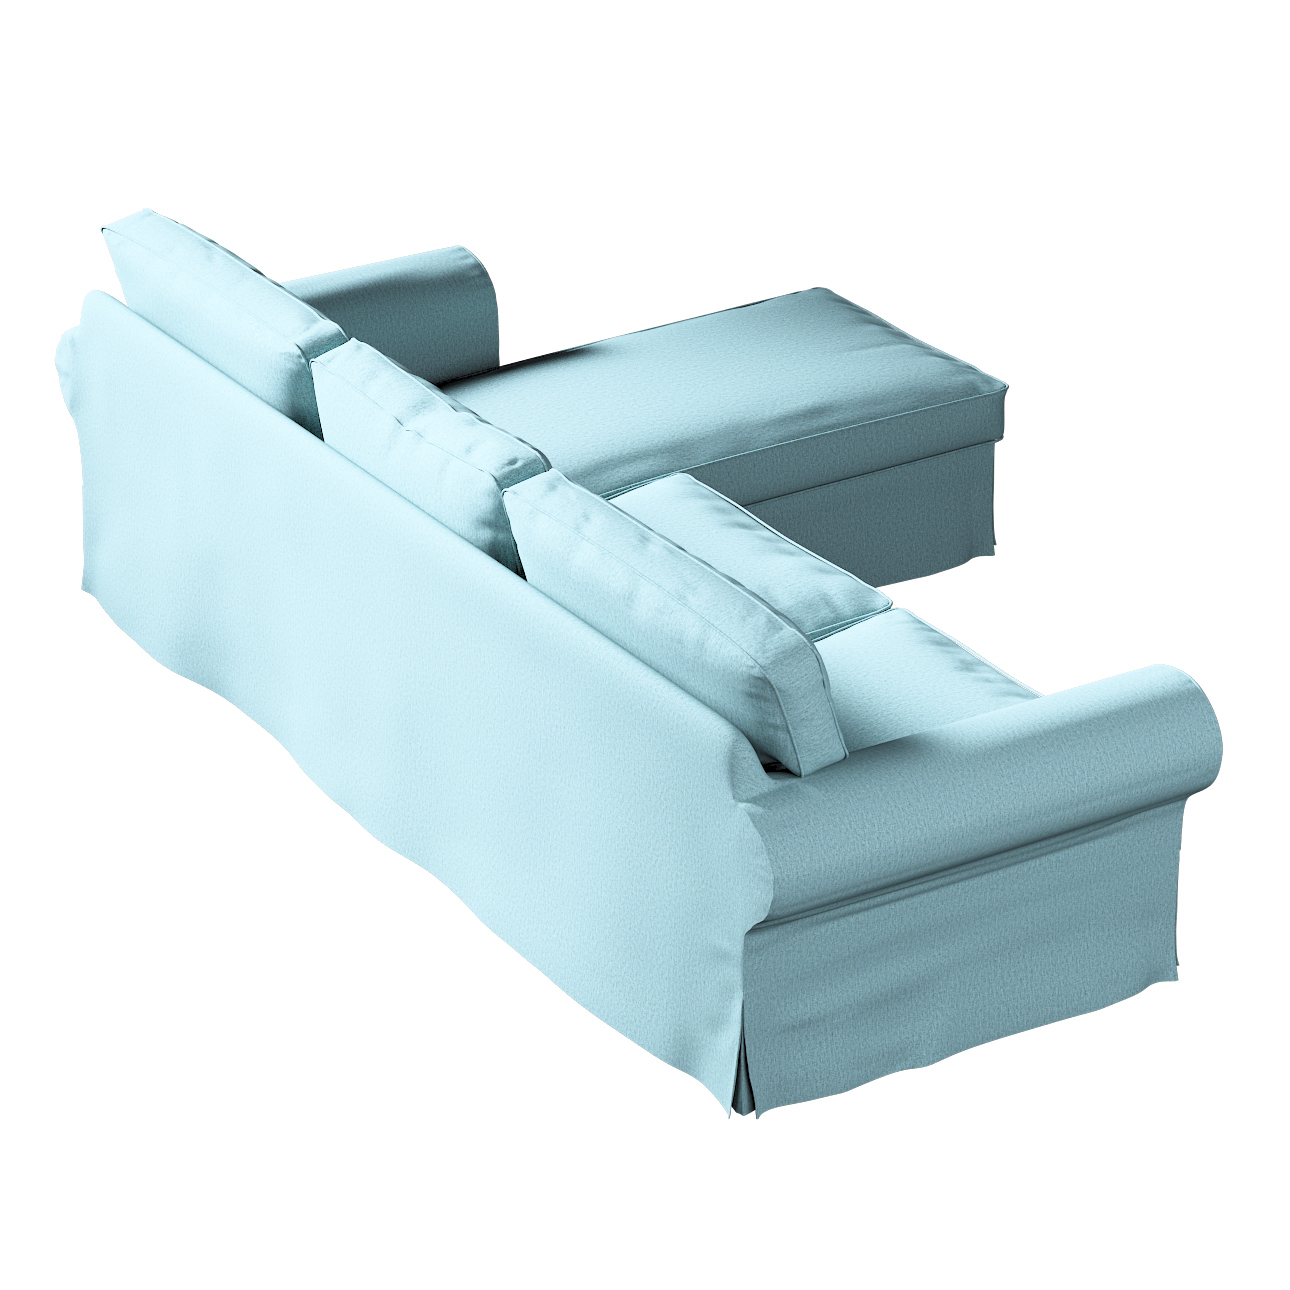 Bezug für Ektorp 2-Sitzer Sofa mit Recamiere, blau, Ektorp 2-Sitzer Sofabez günstig online kaufen